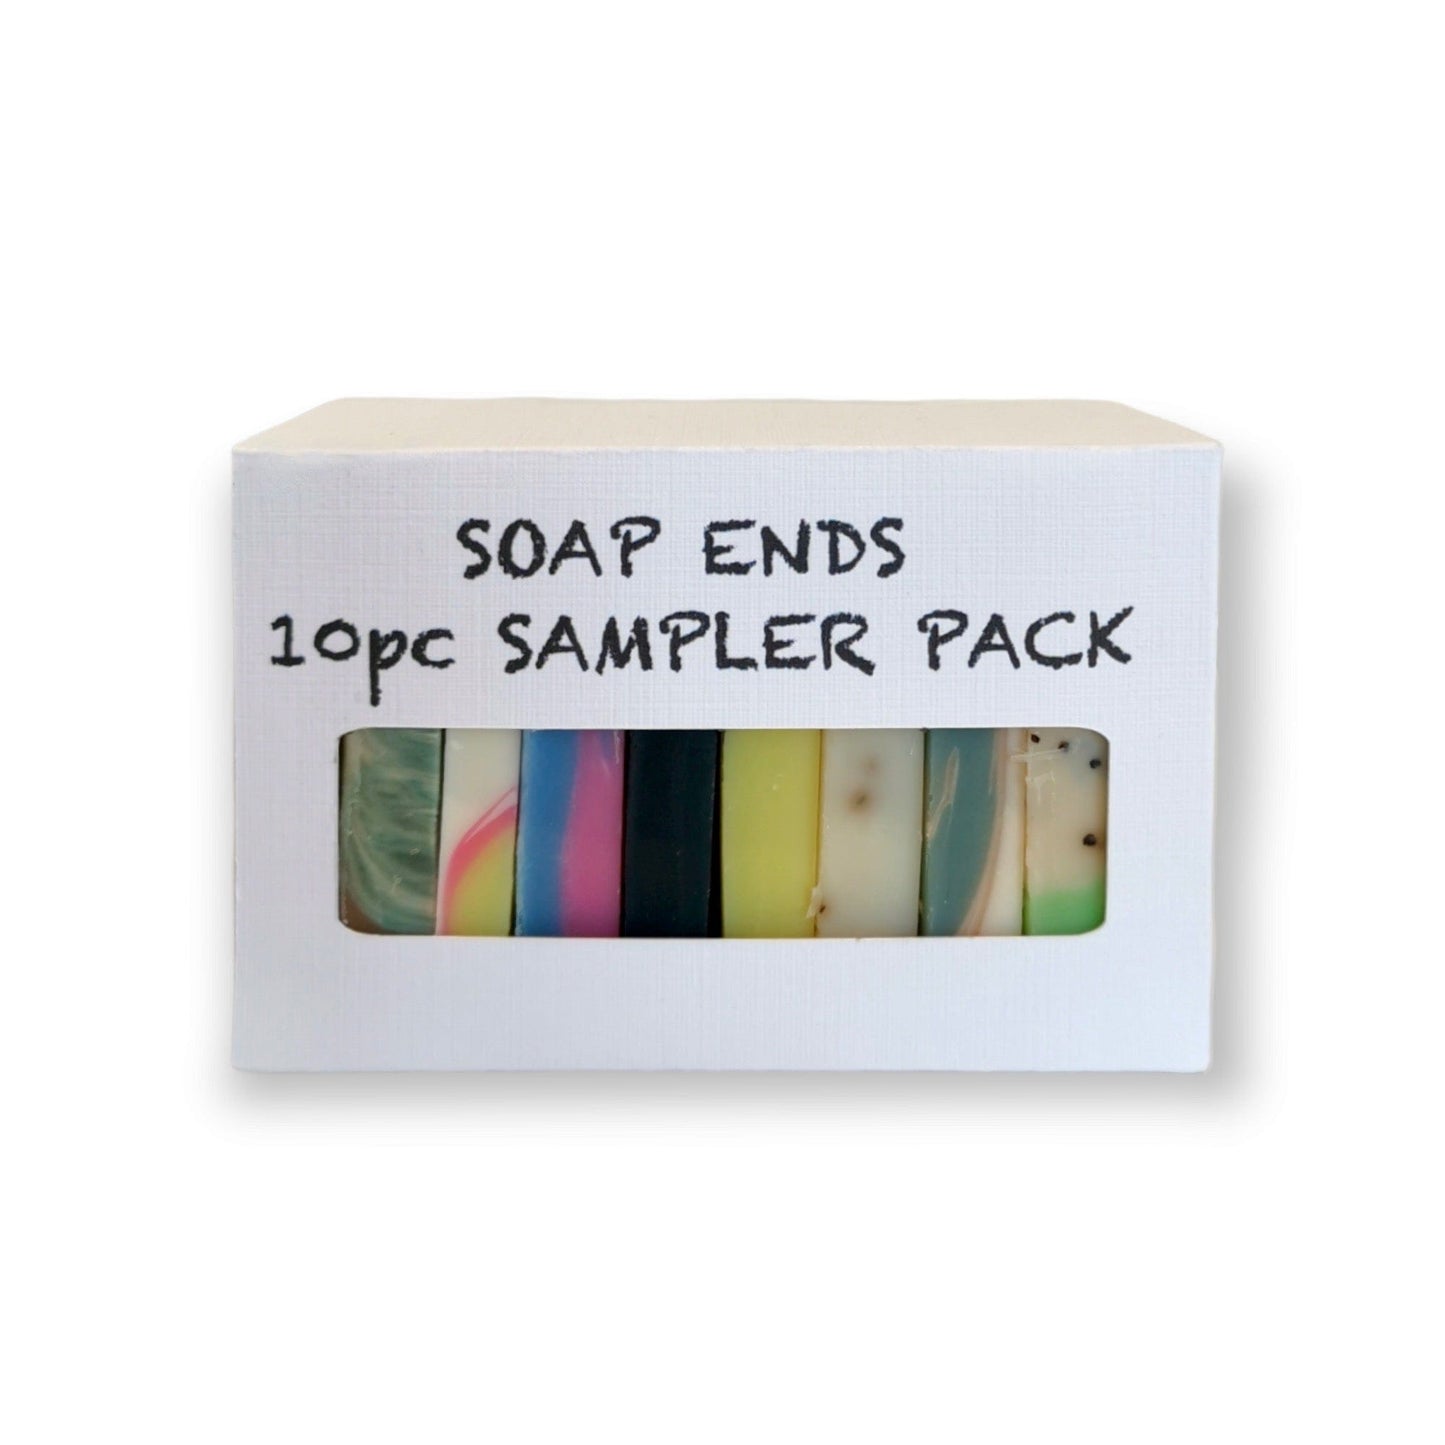 Sulphur City Soapery soap Soap ends, 10pc sampler pack.